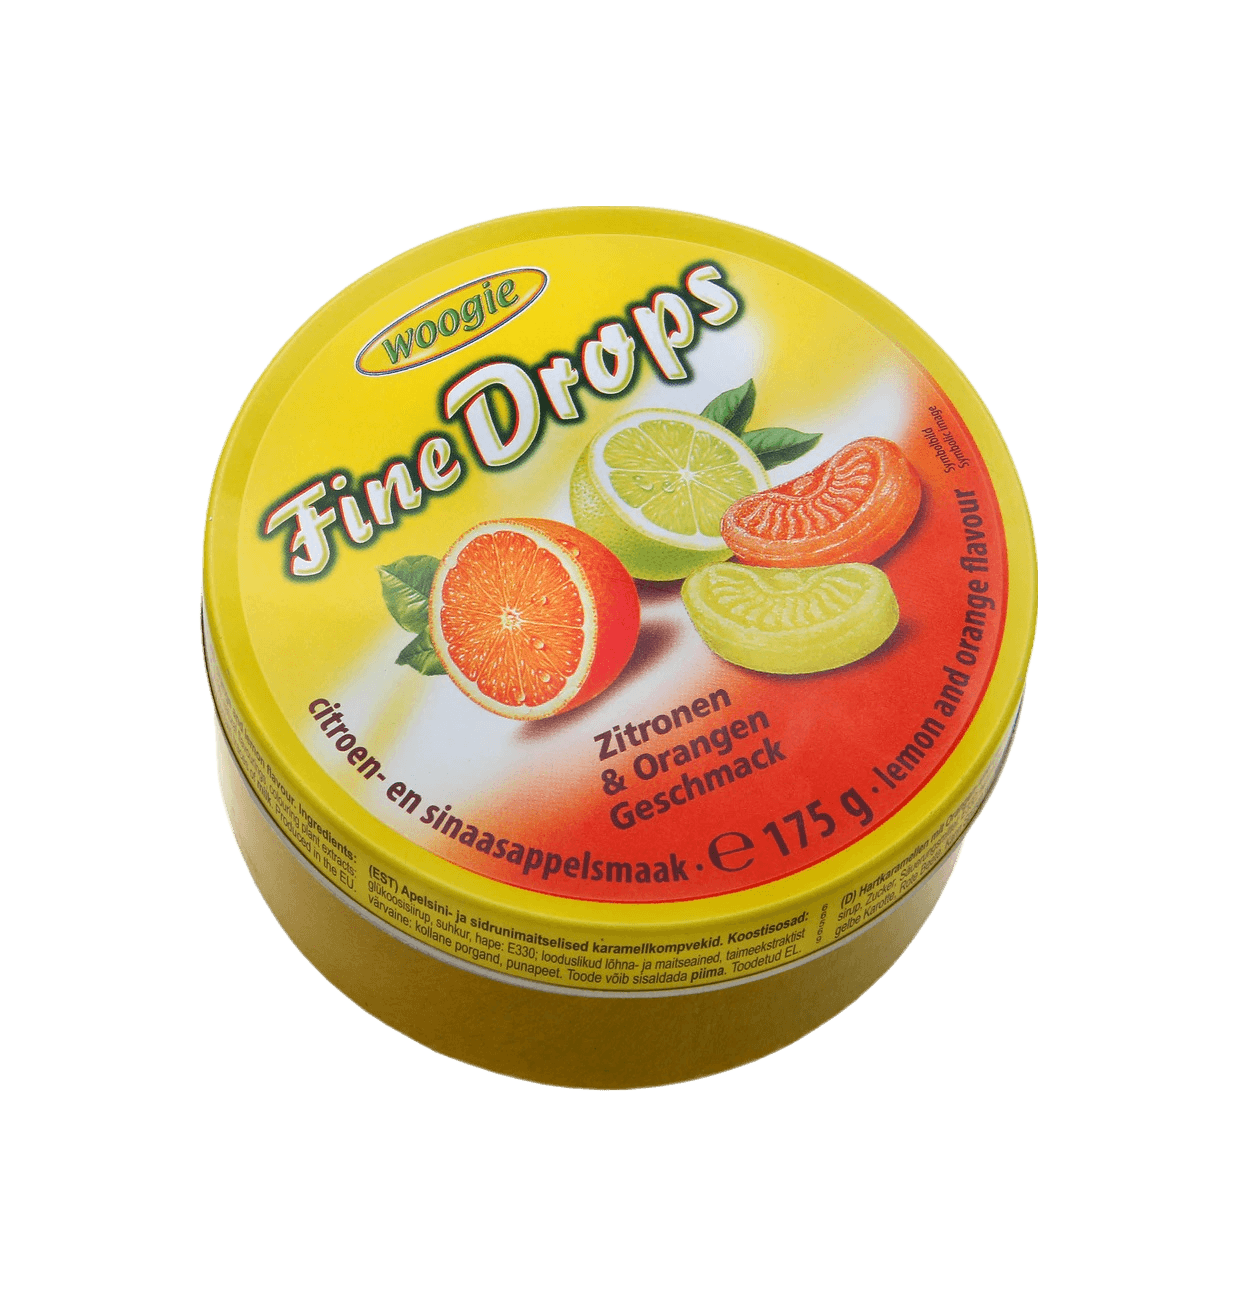 Woogie Zitronen und Orangen Bonbons "Fine Drops" 175g Dose